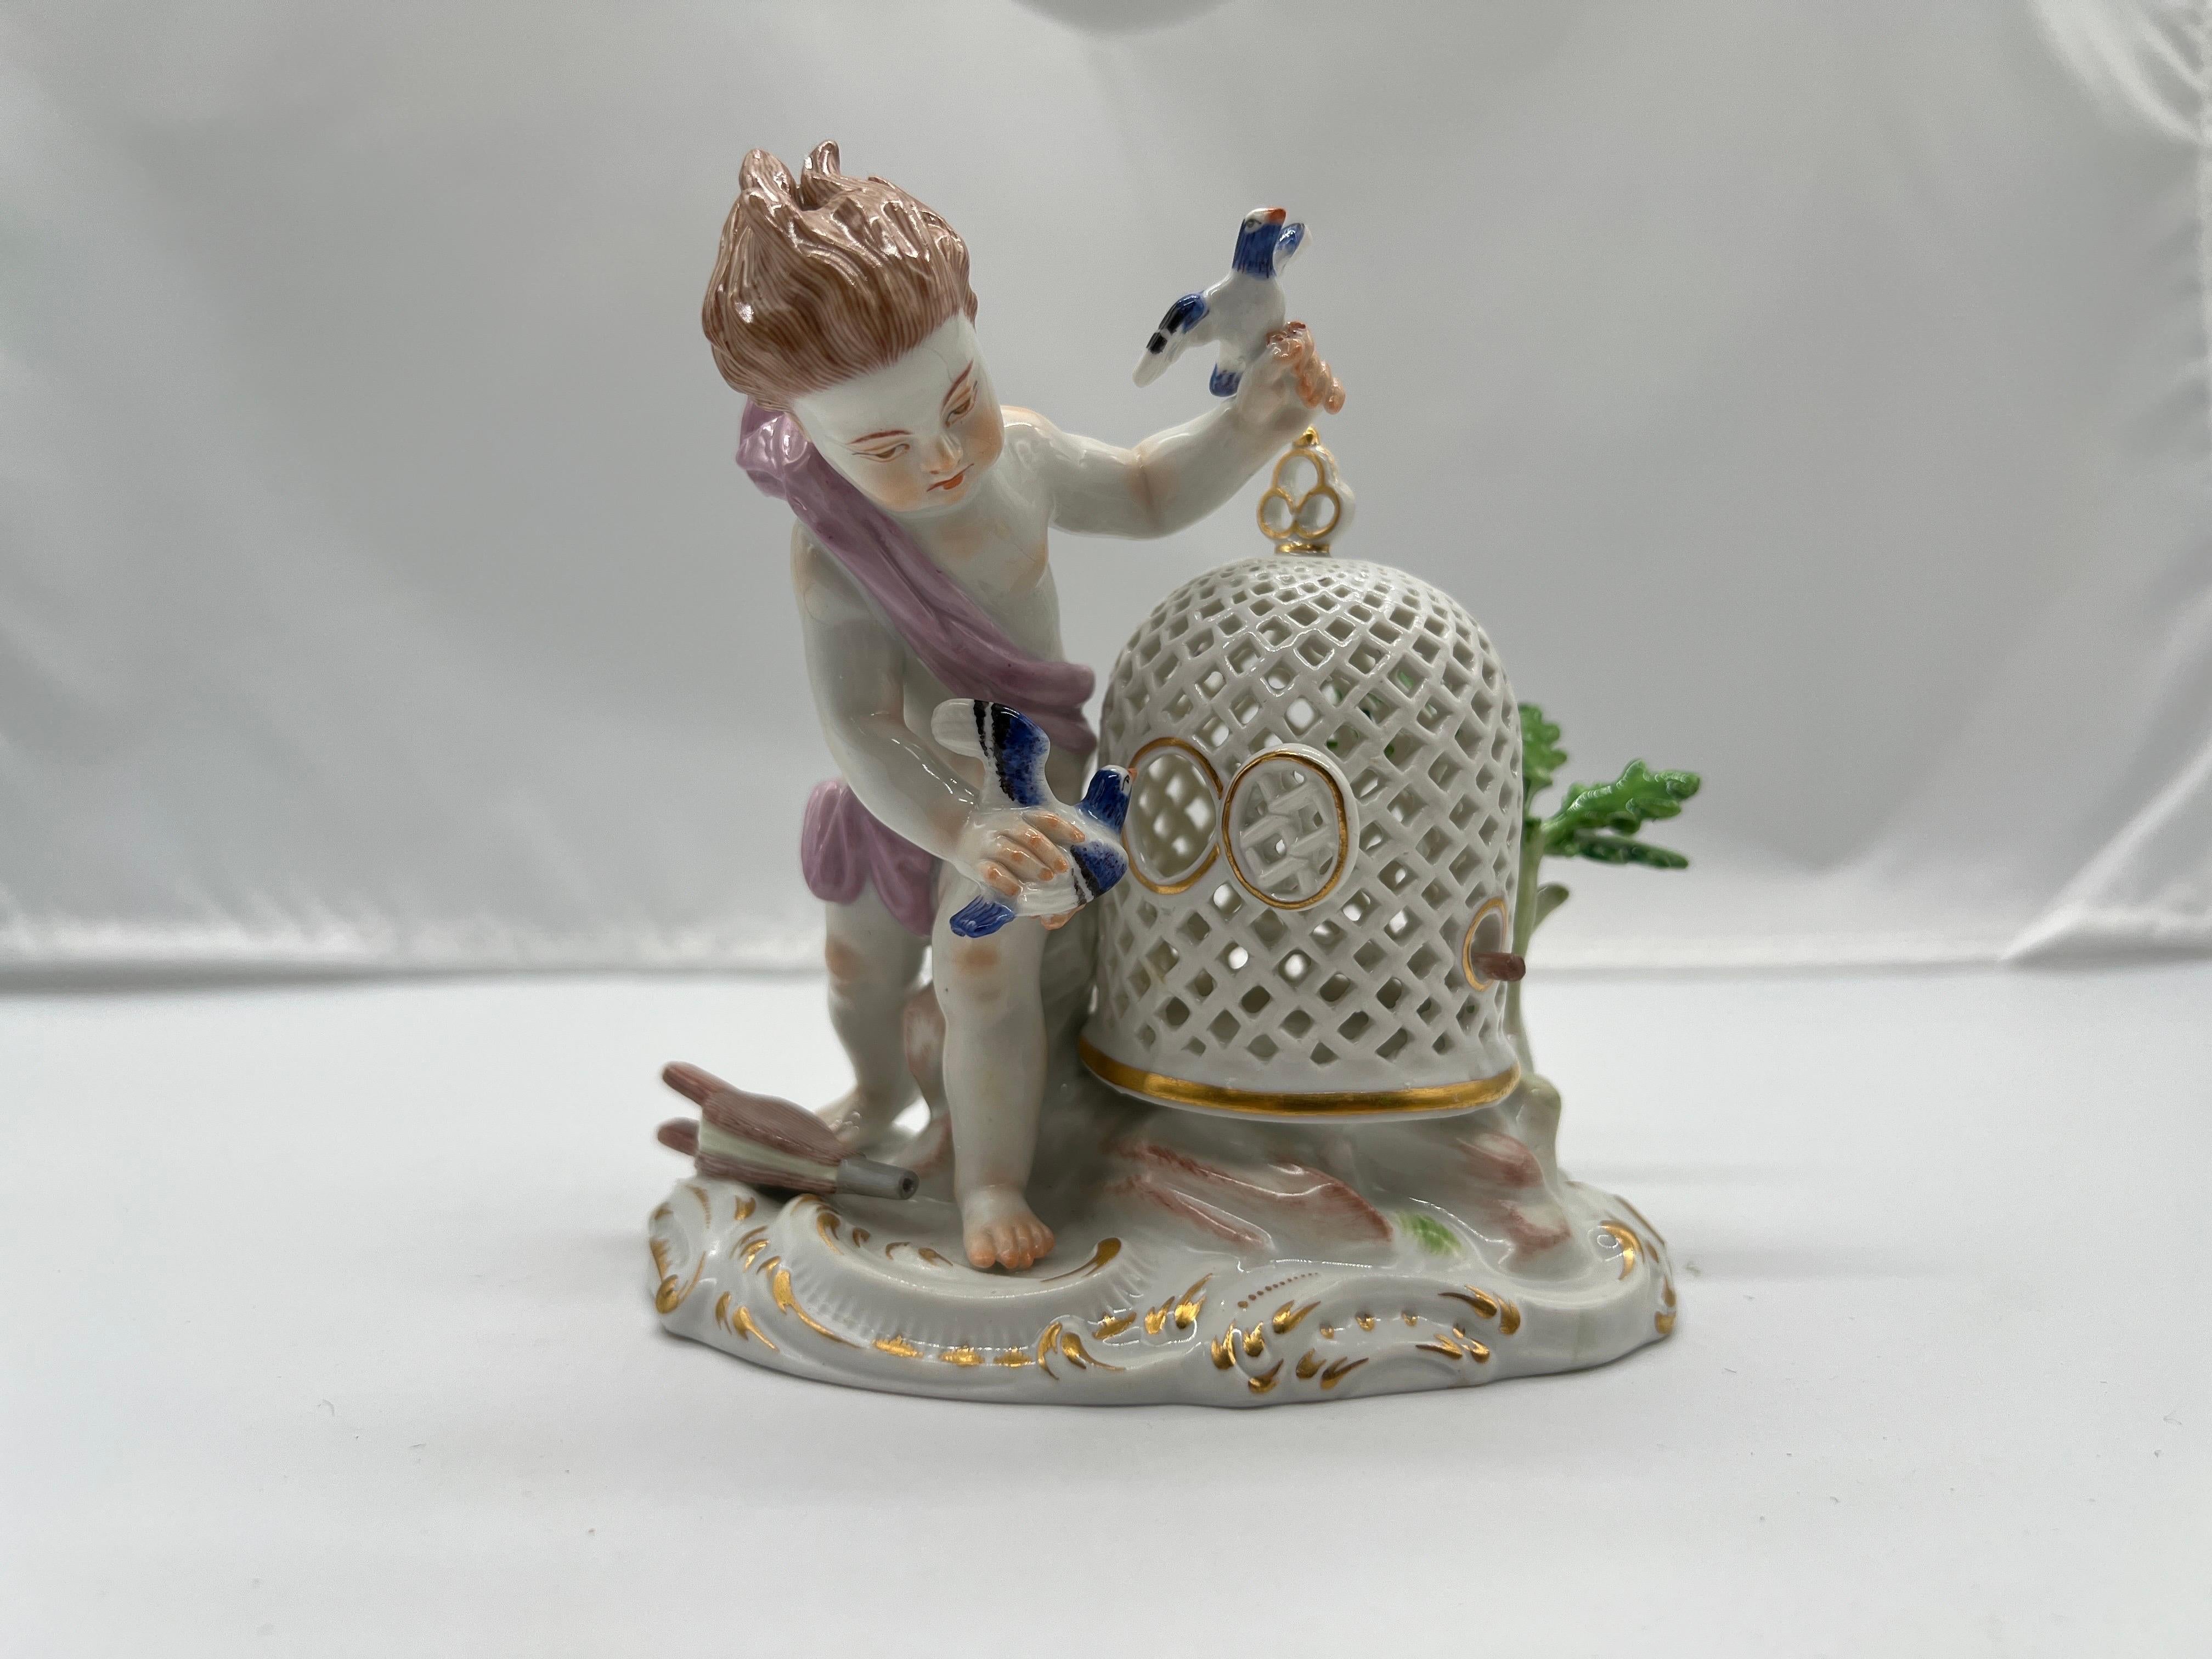 Meissen, 19. Jahrhundert.

Eine feine Qualität Meissener Porzellanfigur, die einen kleinen Jungen darstellt, der mit seinem Vogel spielt. Die Figur steht neben einem durchbrochenen Vogelkäfig aus Porzellan, der mit Blattwerk verziert ist. Auf der